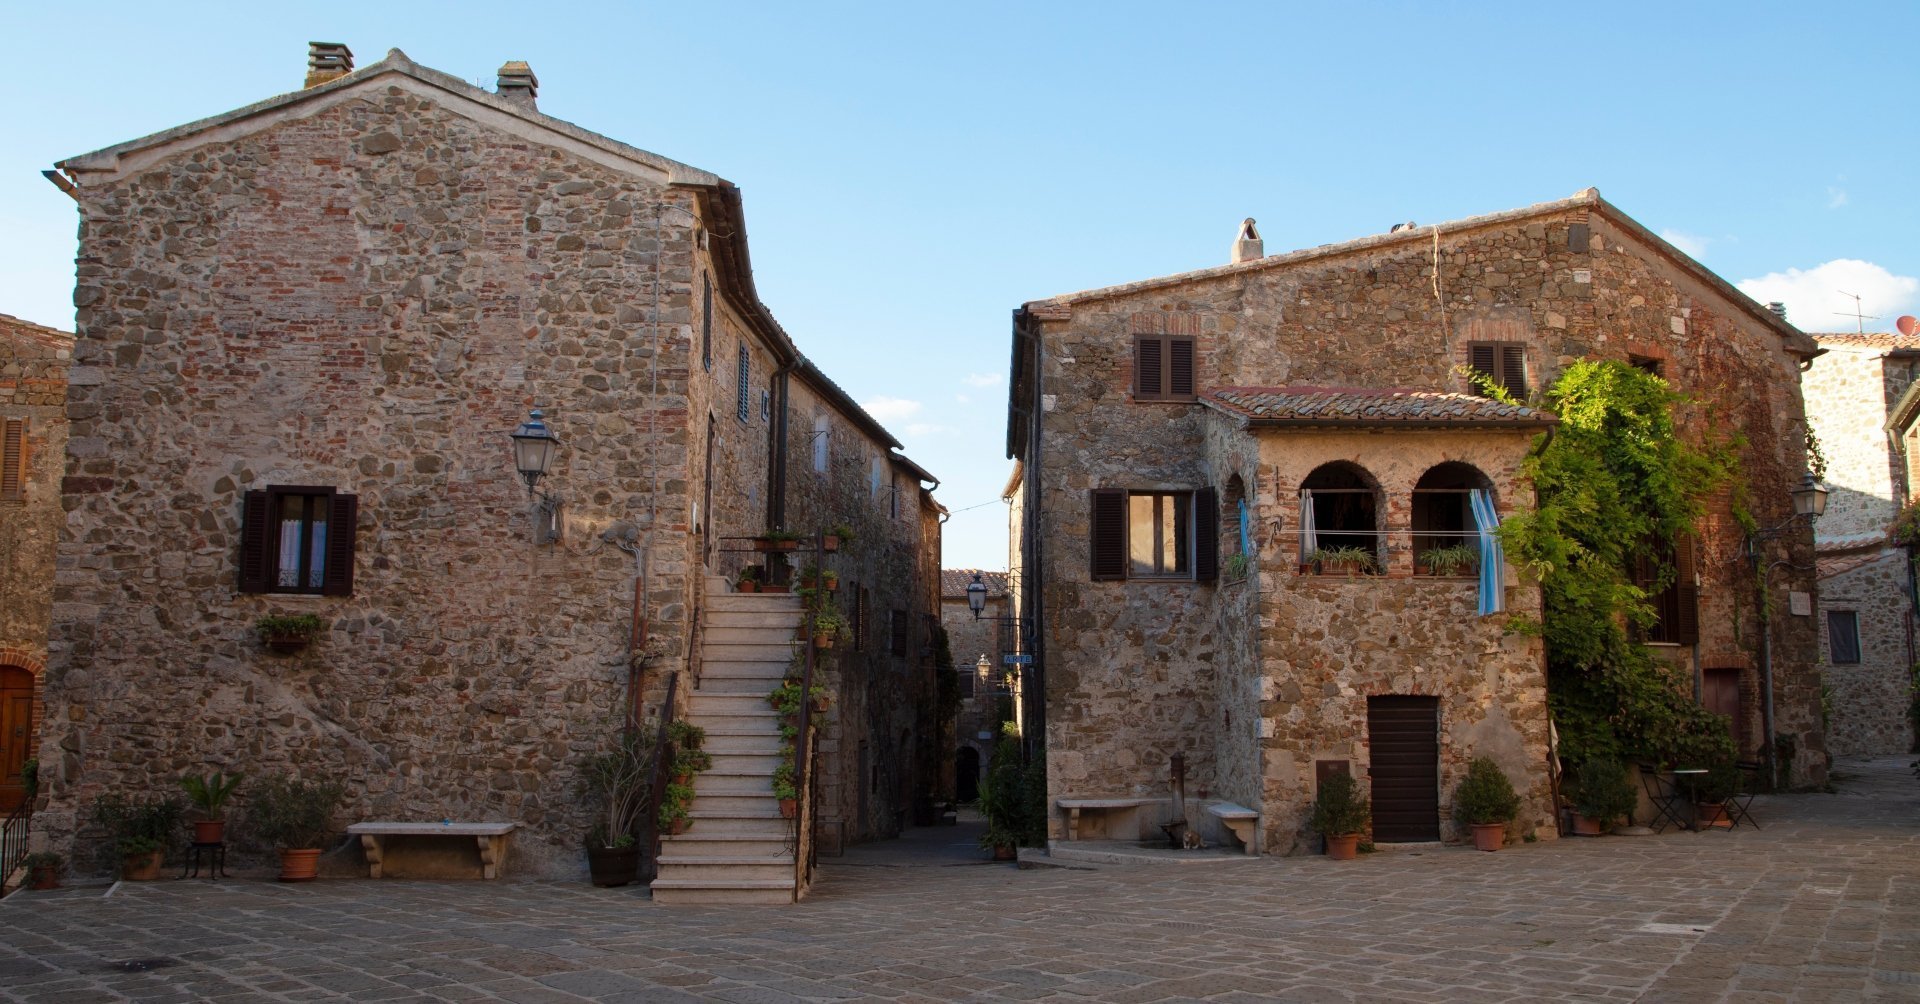 Itinerario in Toscana. Un piccolo _Borgo gioiello_, un sito Etrusco e relax nelle Terme di Saturnia